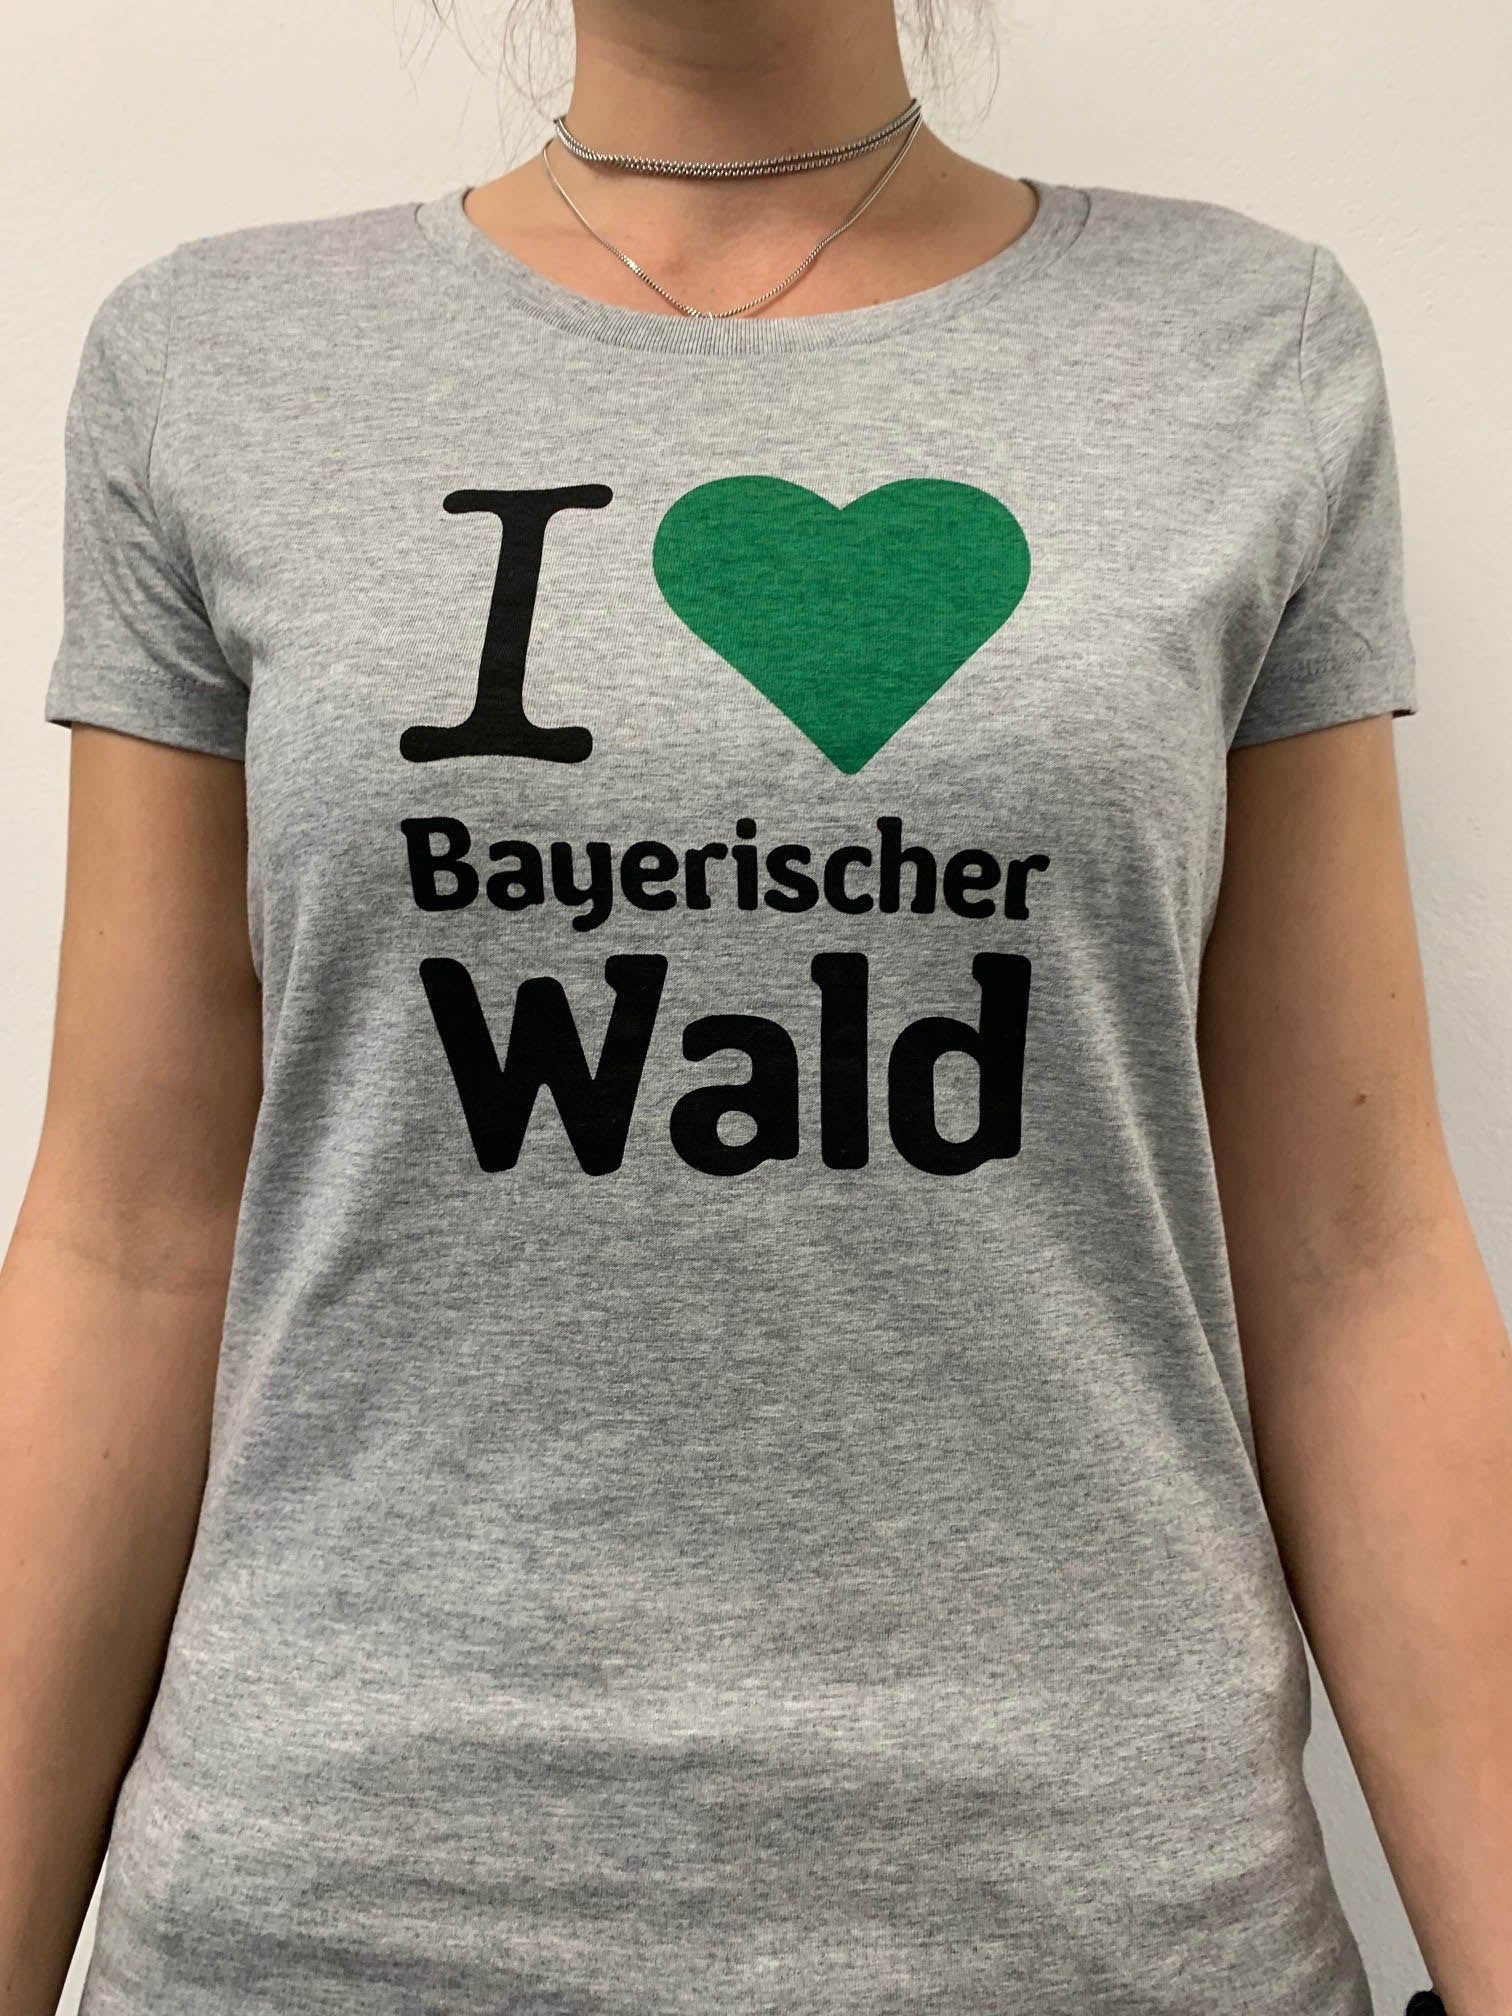 Bayerischer wald 